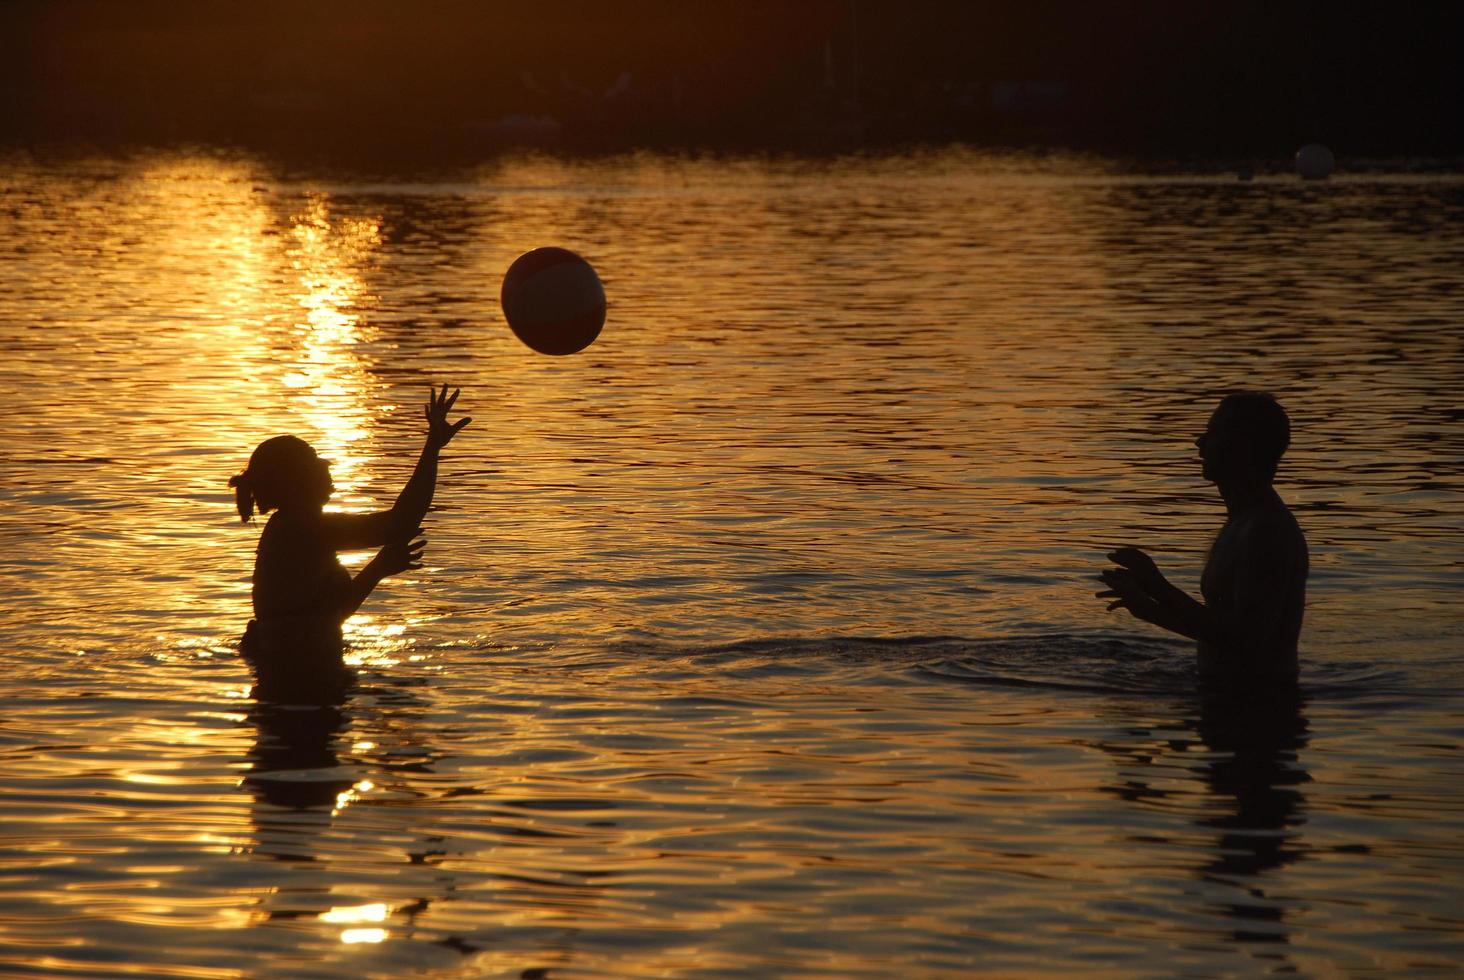 pareja jugando a la pelota en el mar durante la puesta de sol foto